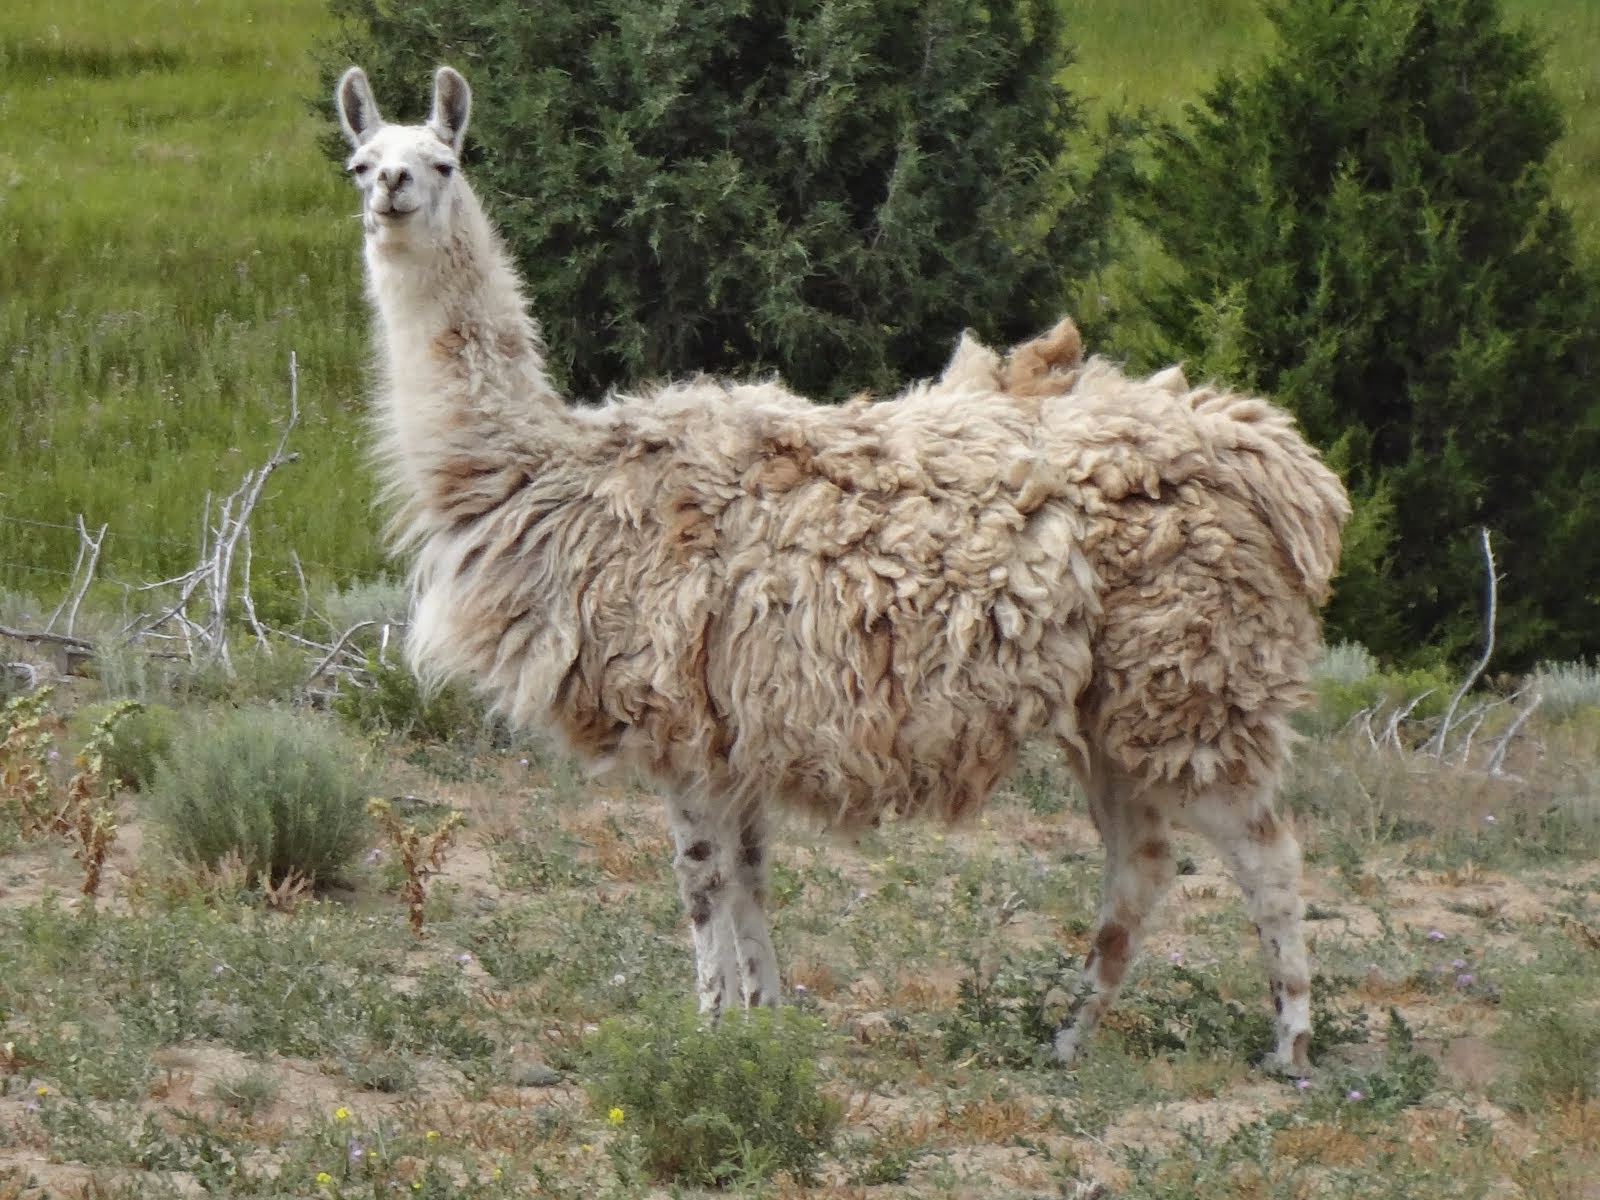 Female llama